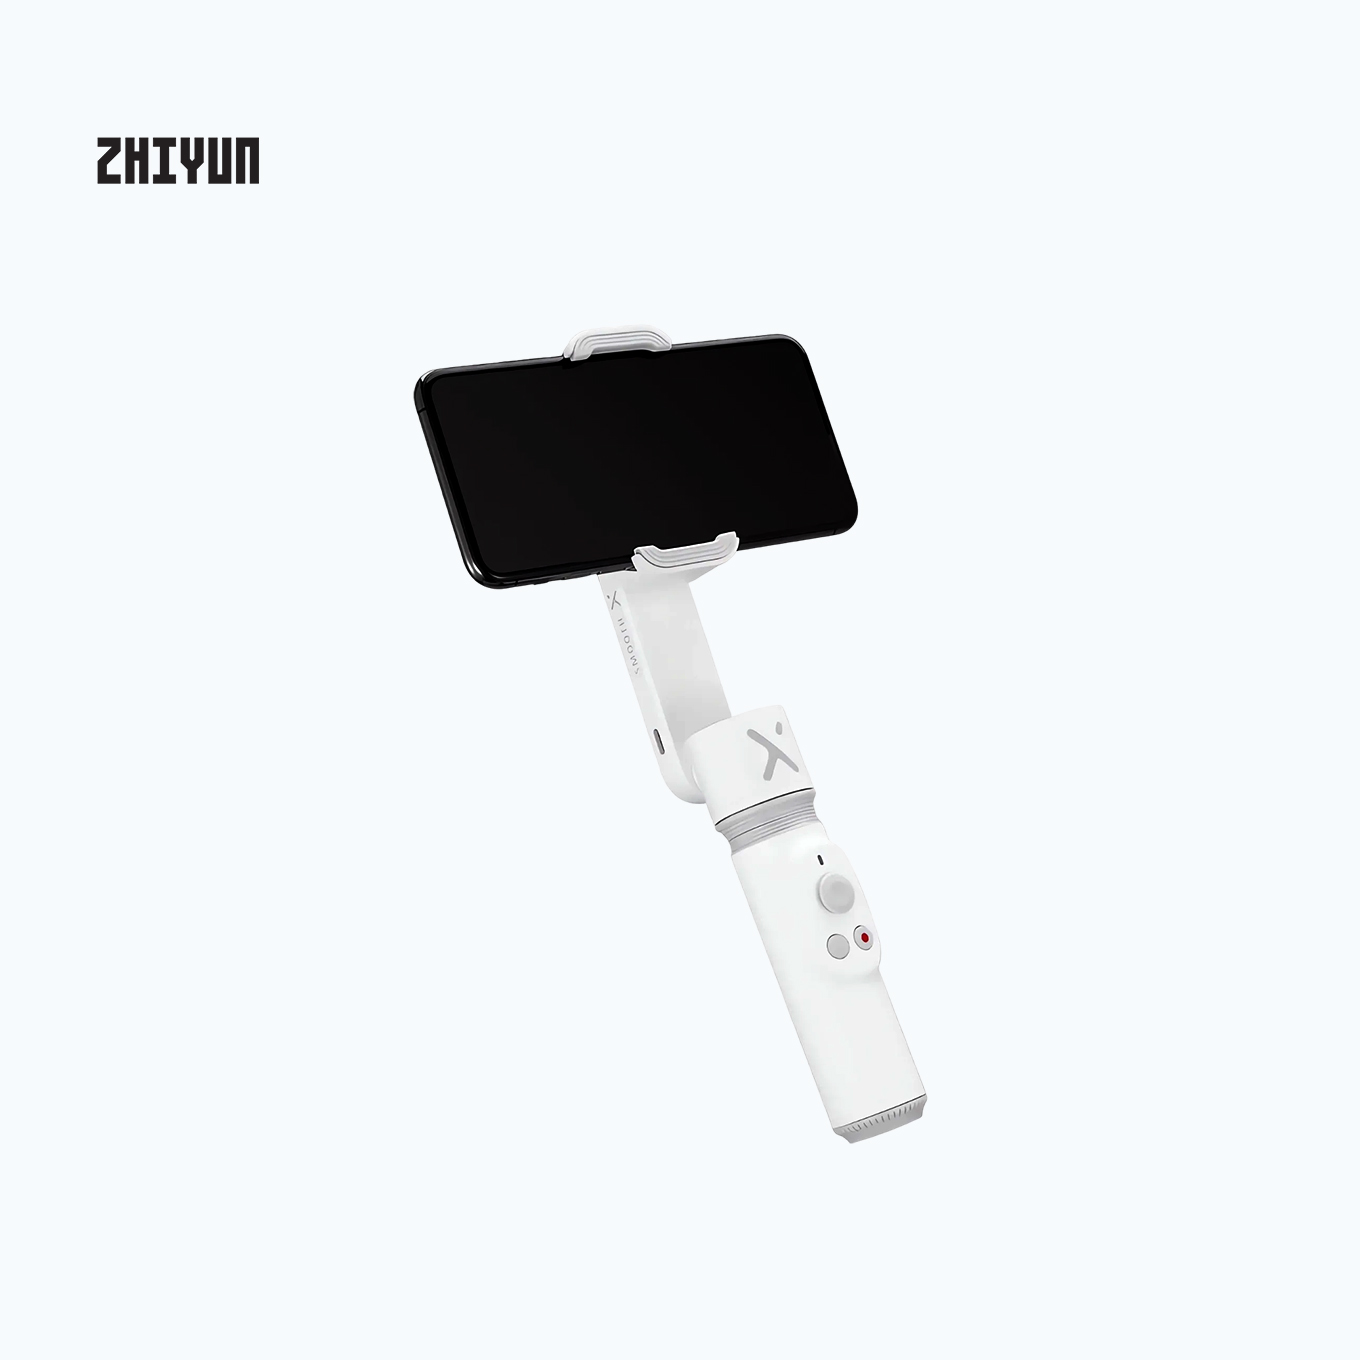 Zhiyun Smooth-X Mobile Gimbal